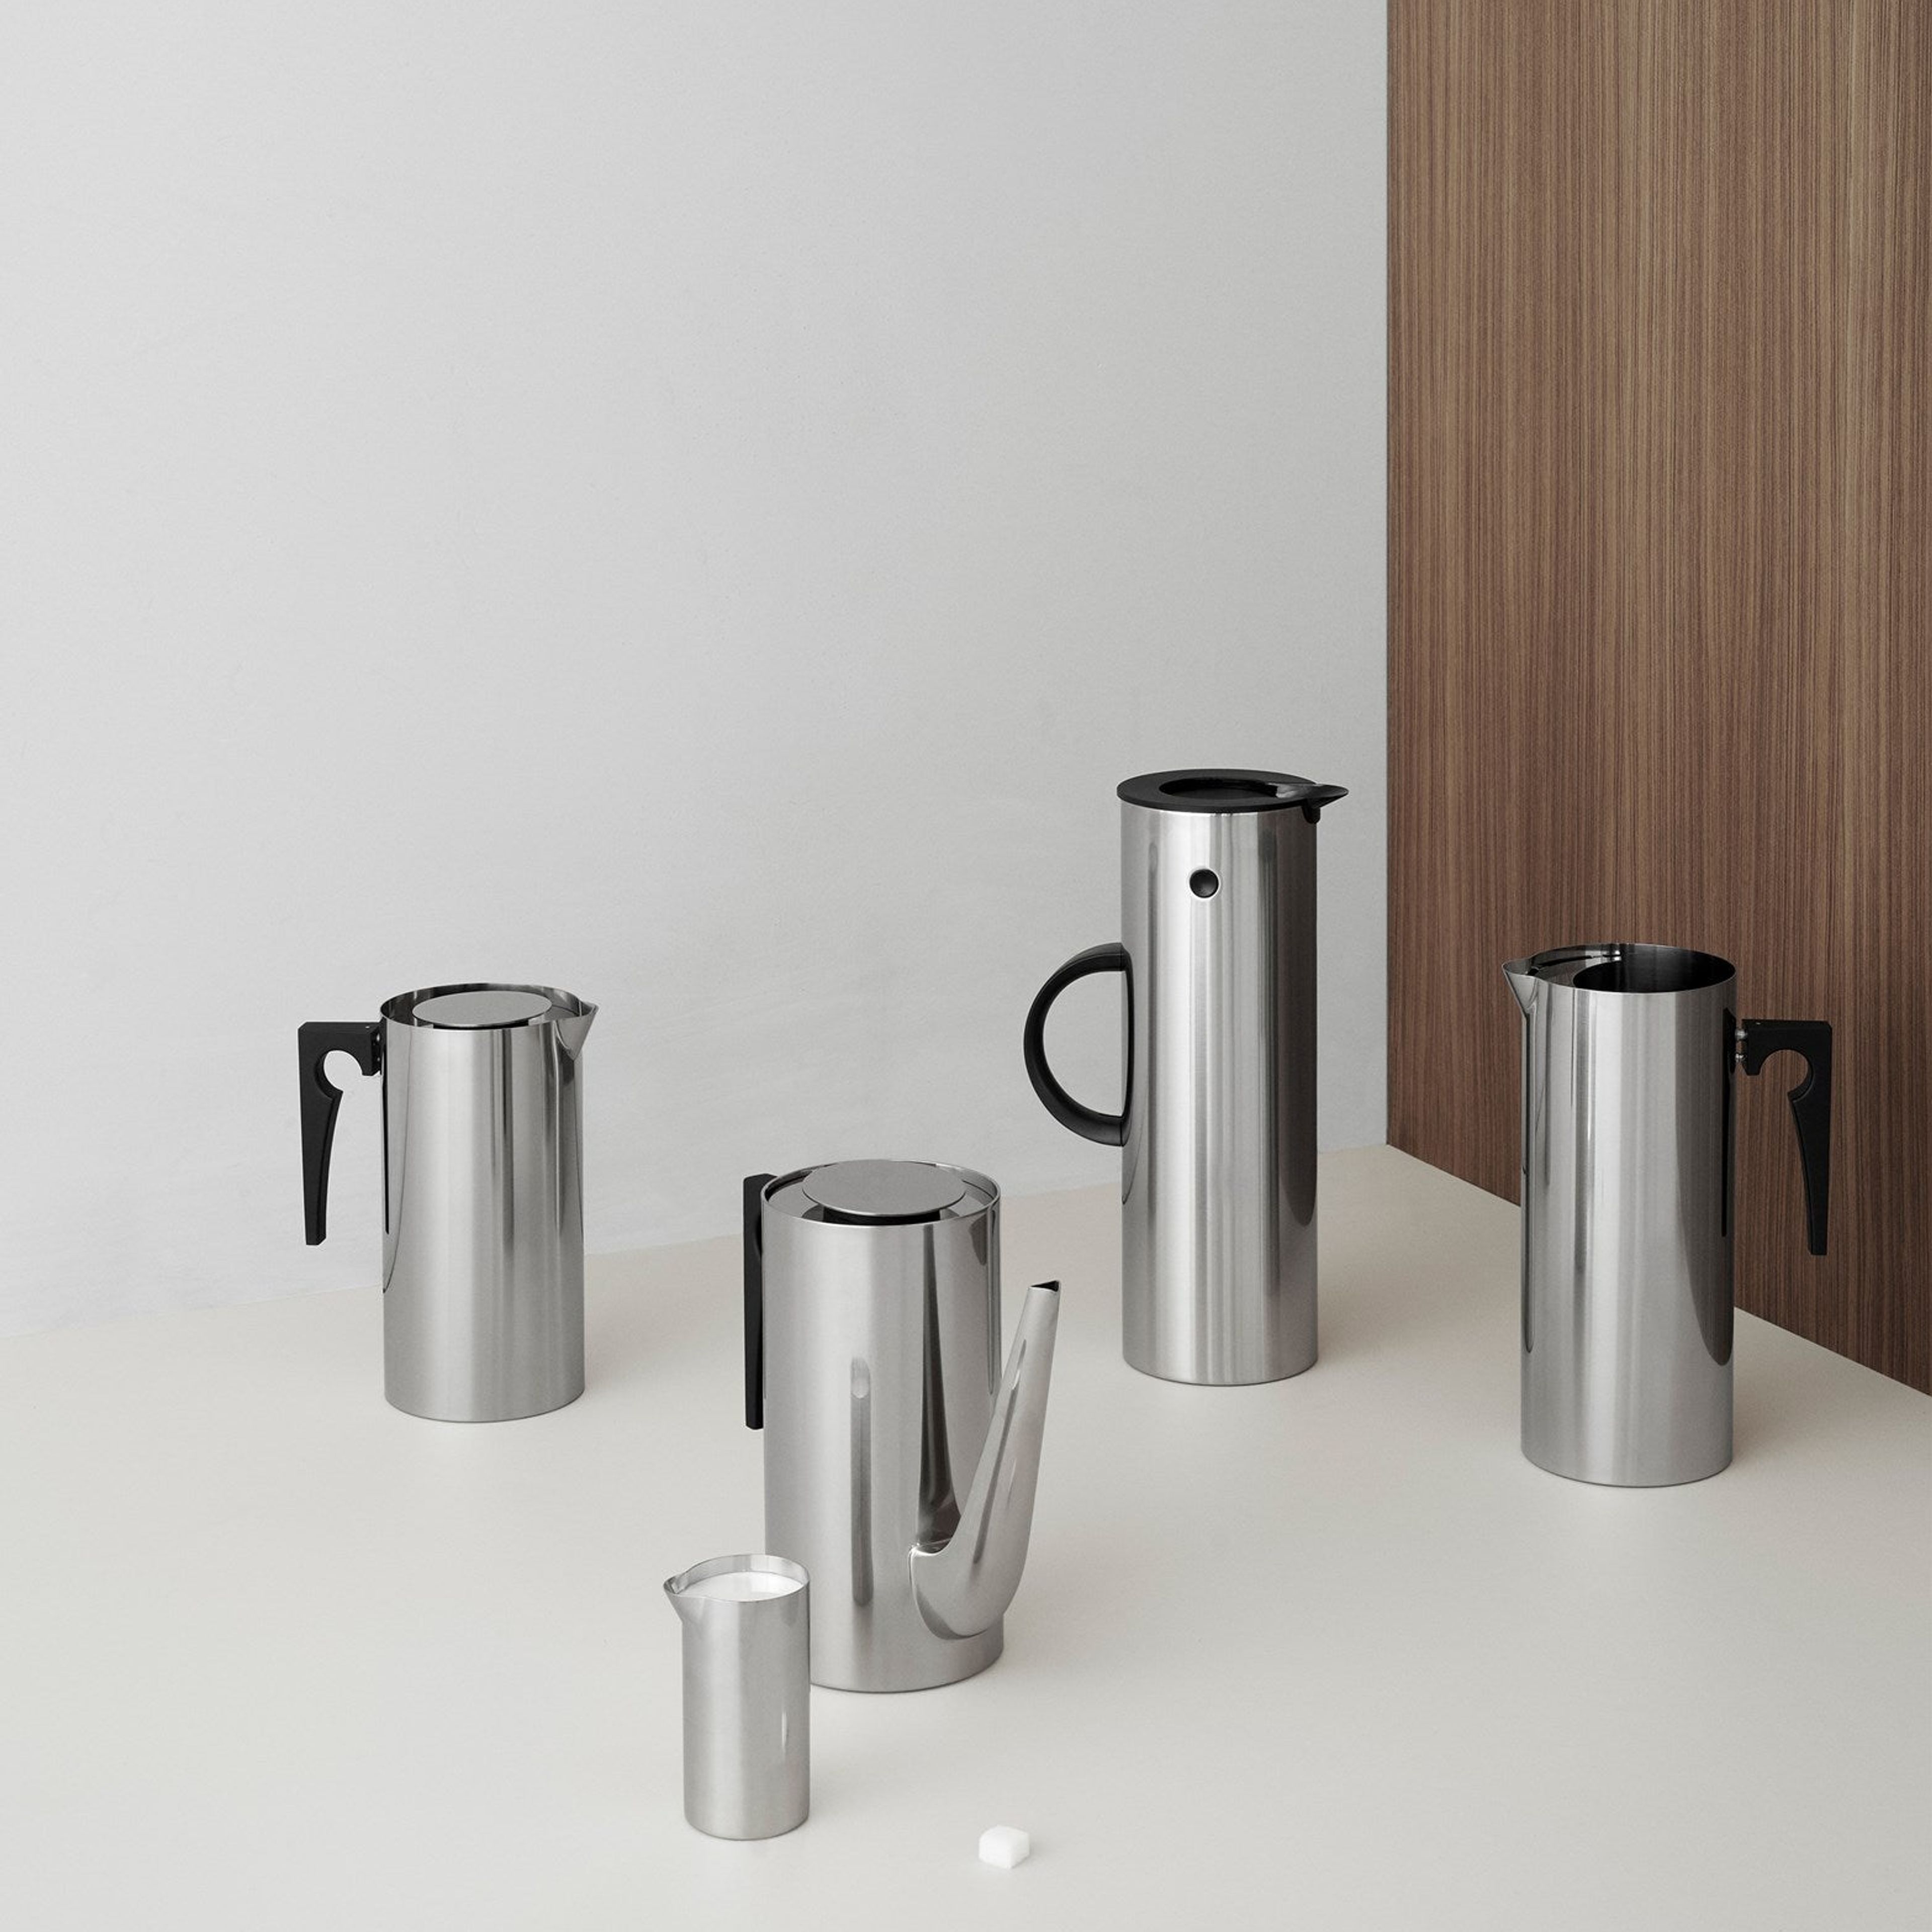 Arne Jacobsen serving jug 67.6 oz